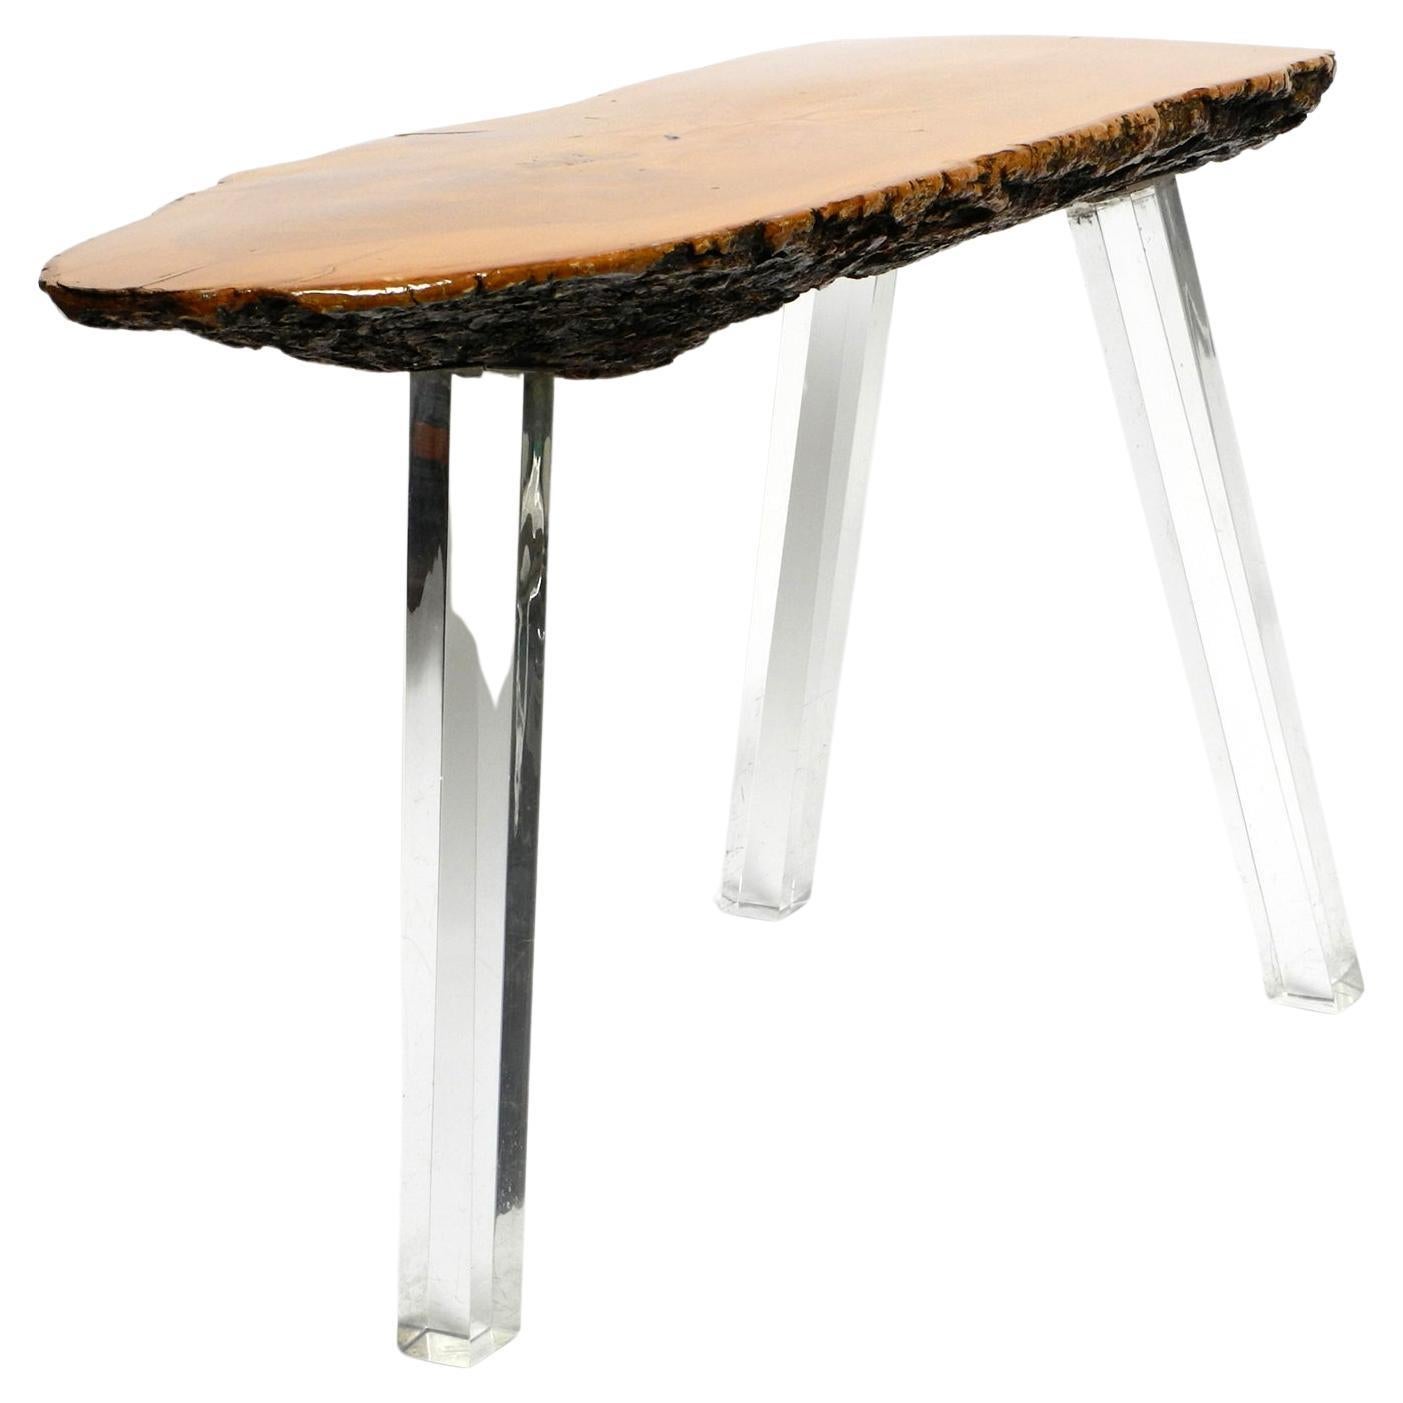 Table basse d'appoint Regency des années 70 fabriquée à partir d'une tranche d'arbre épaisse et de pieds en plexiglas